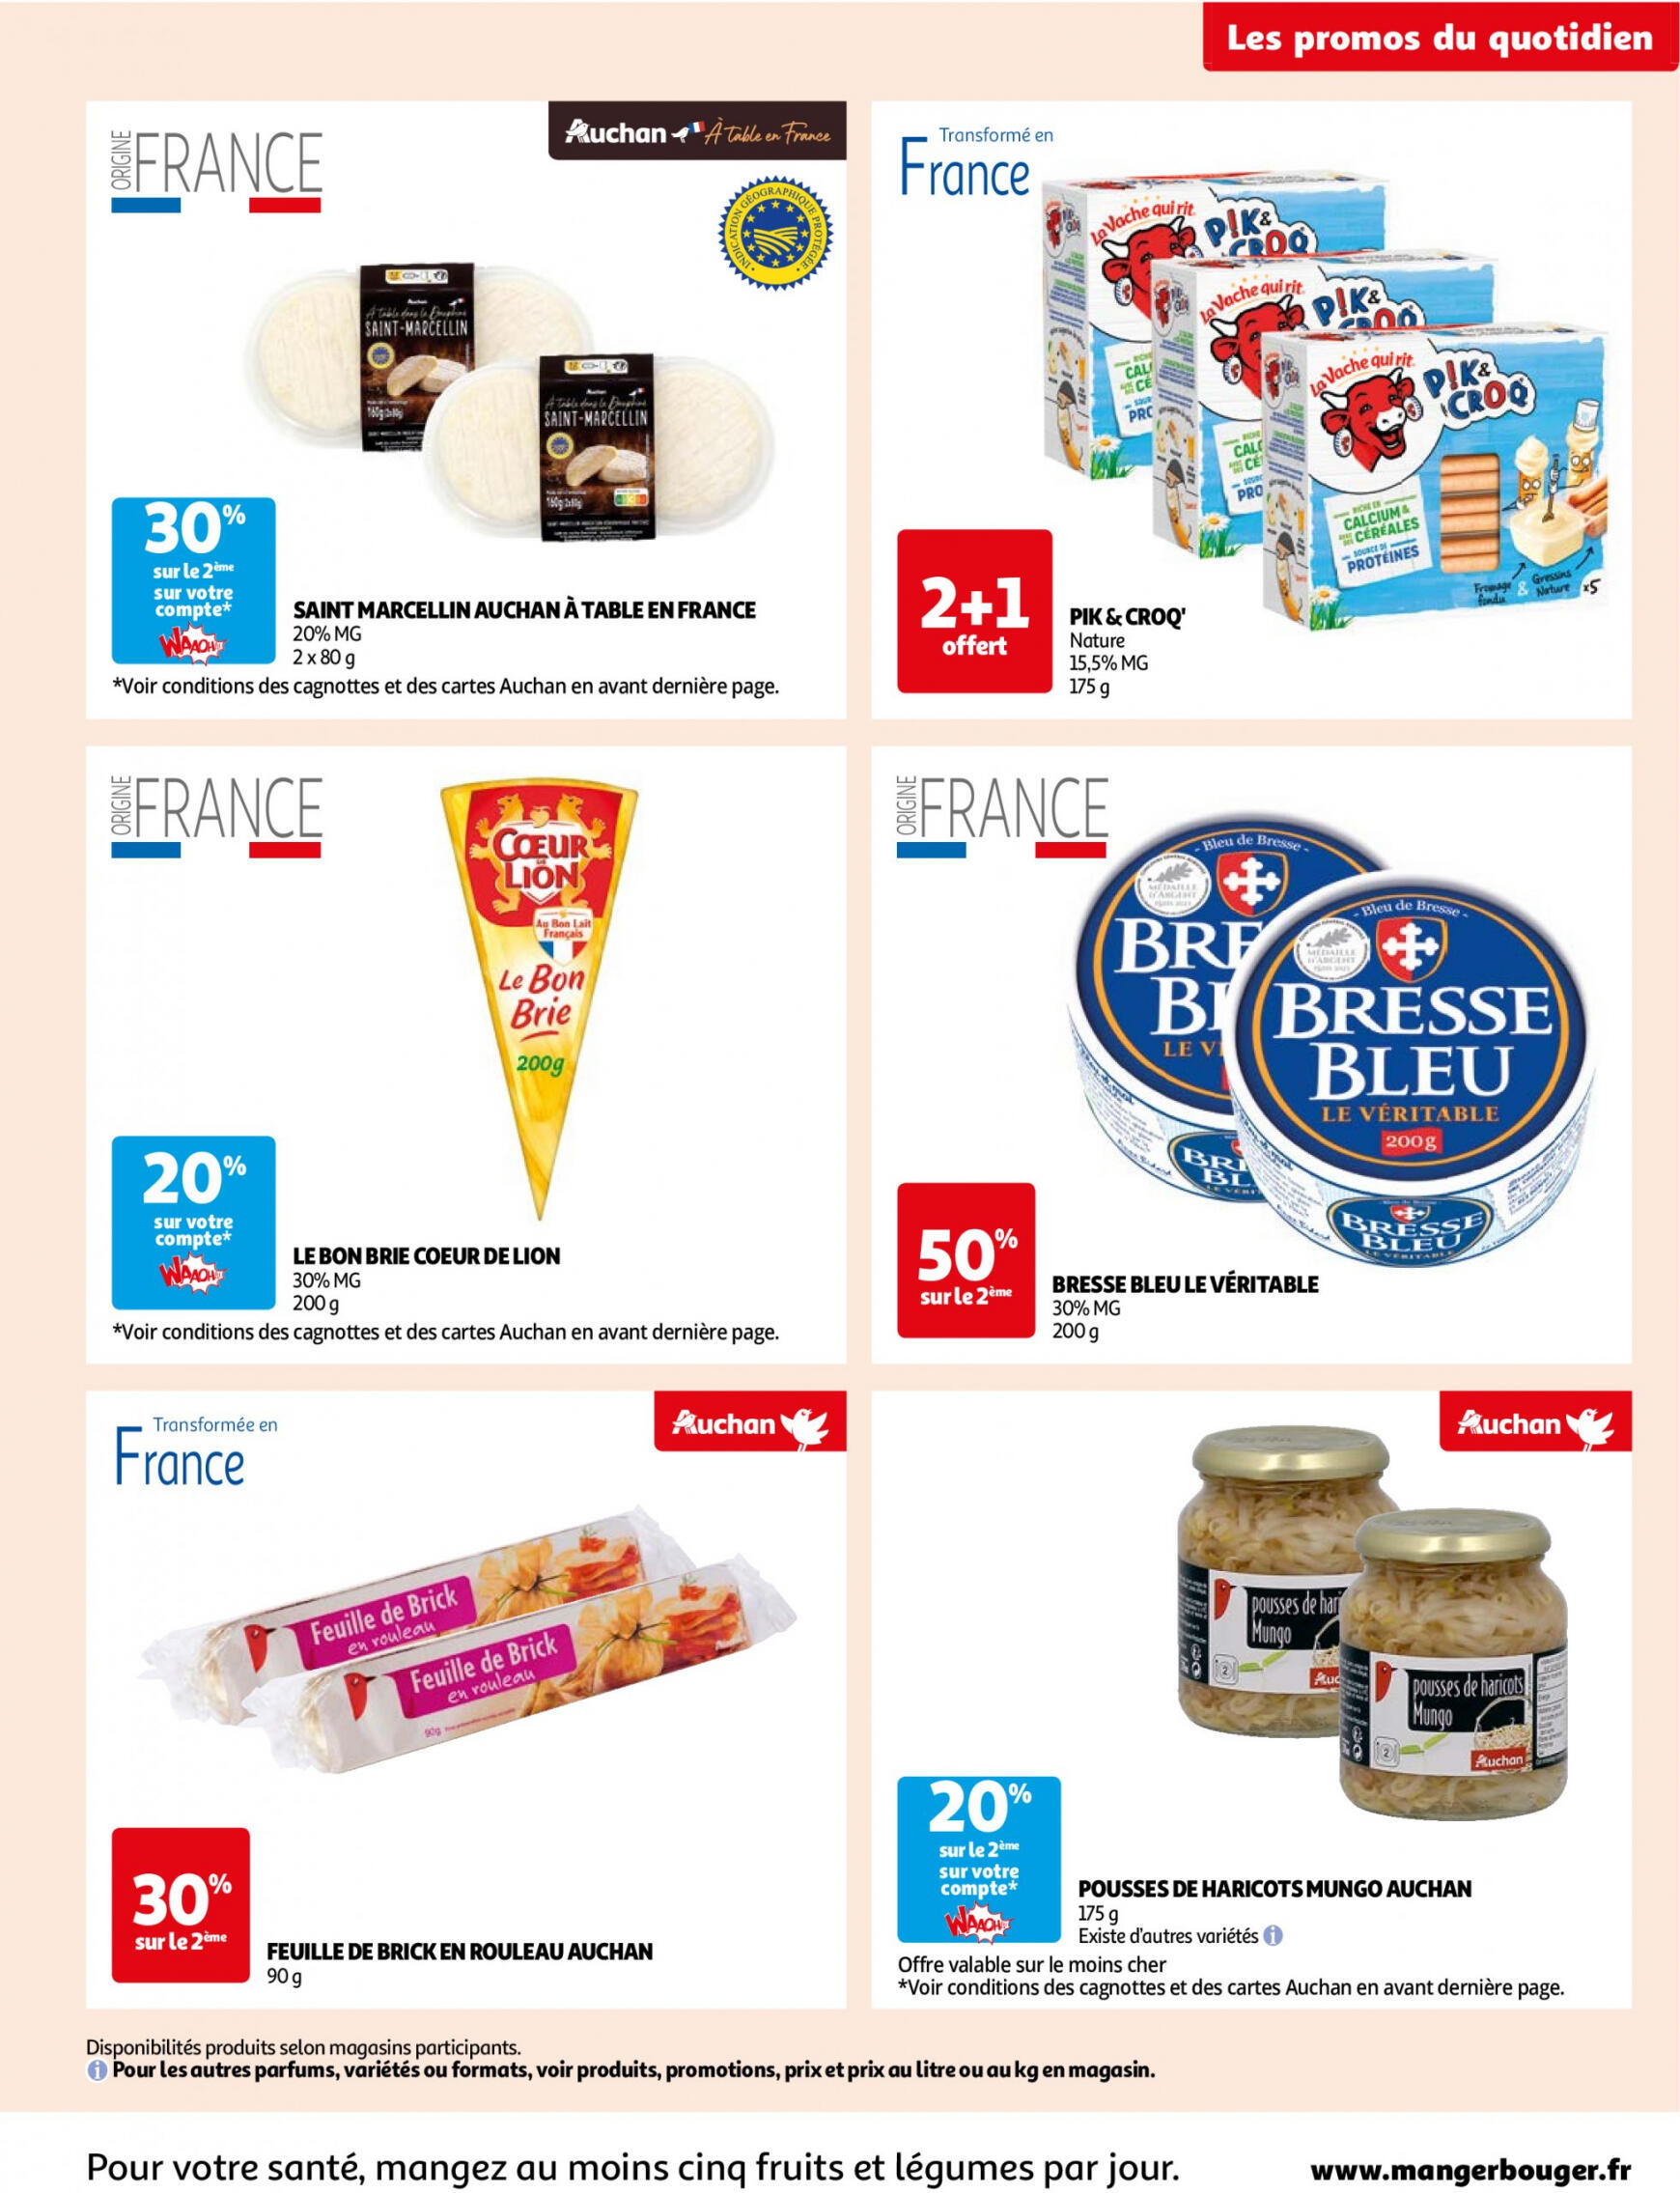 auchan - Auchan - Des économies au quotidien folder huidig 14.05. - 03.06. - page: 5